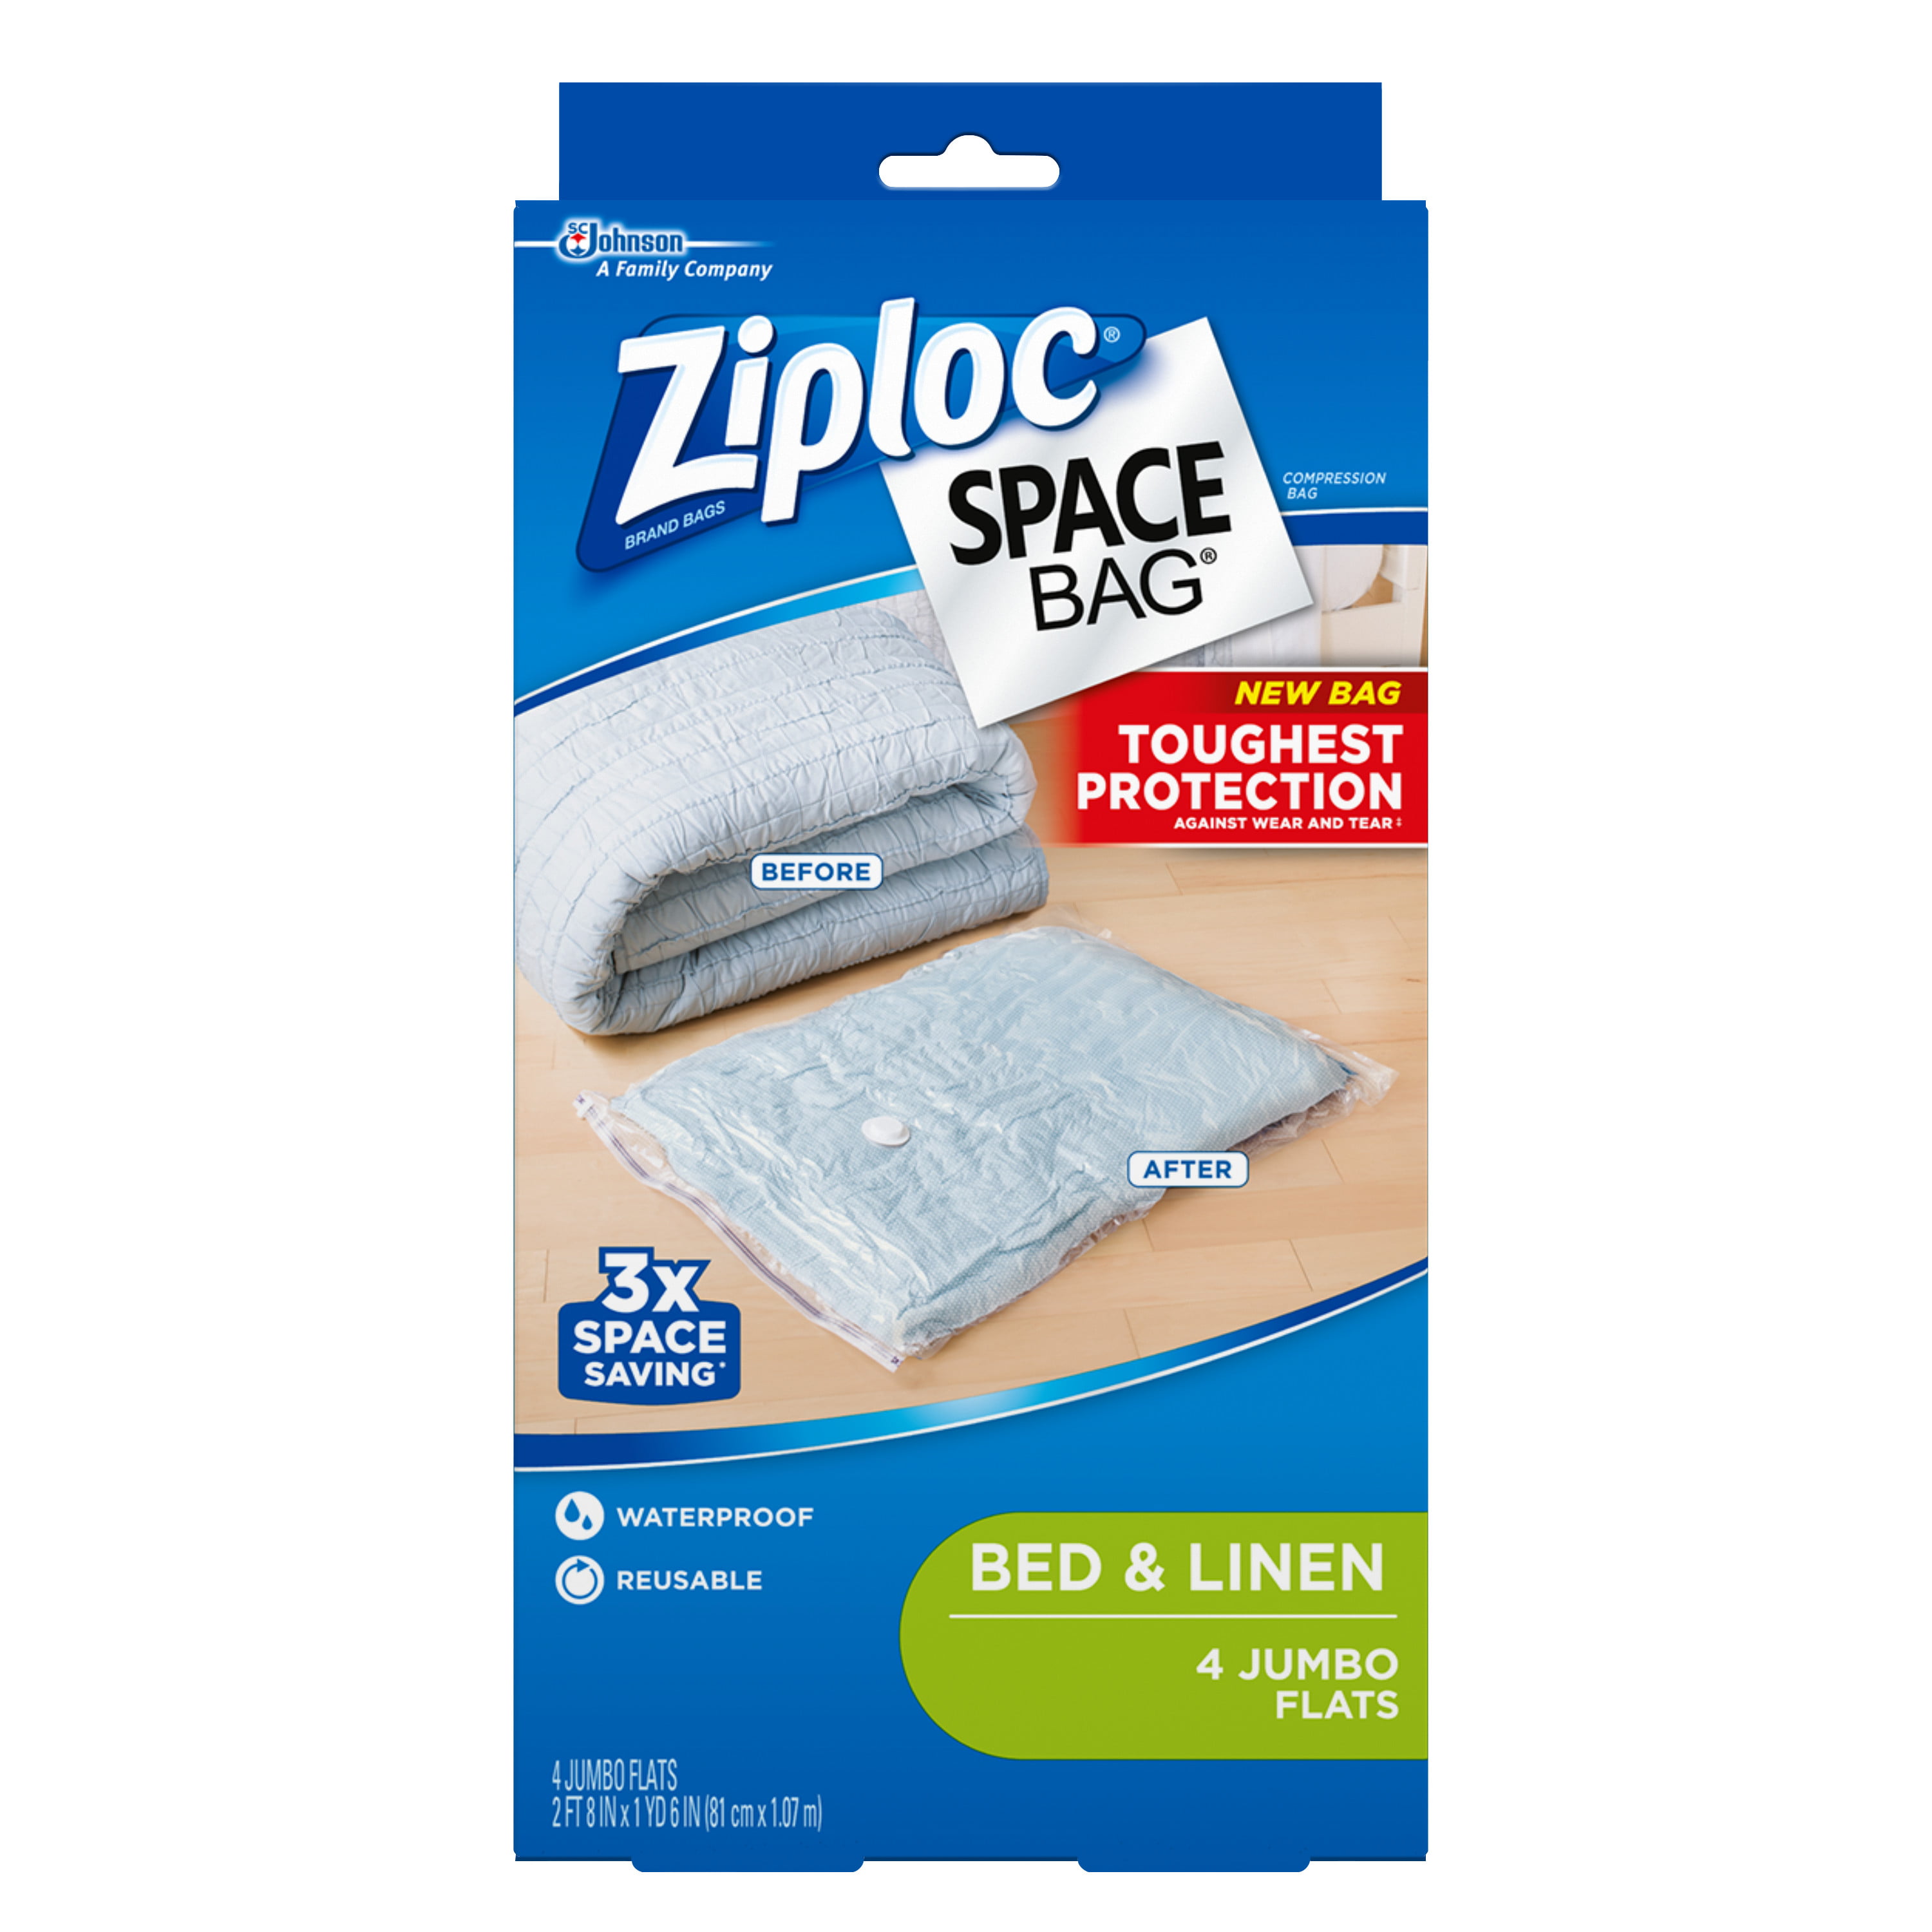 Ziploc Space Bags, Jumbo Flat, 4 ct - Walmart.com - Walmart.com